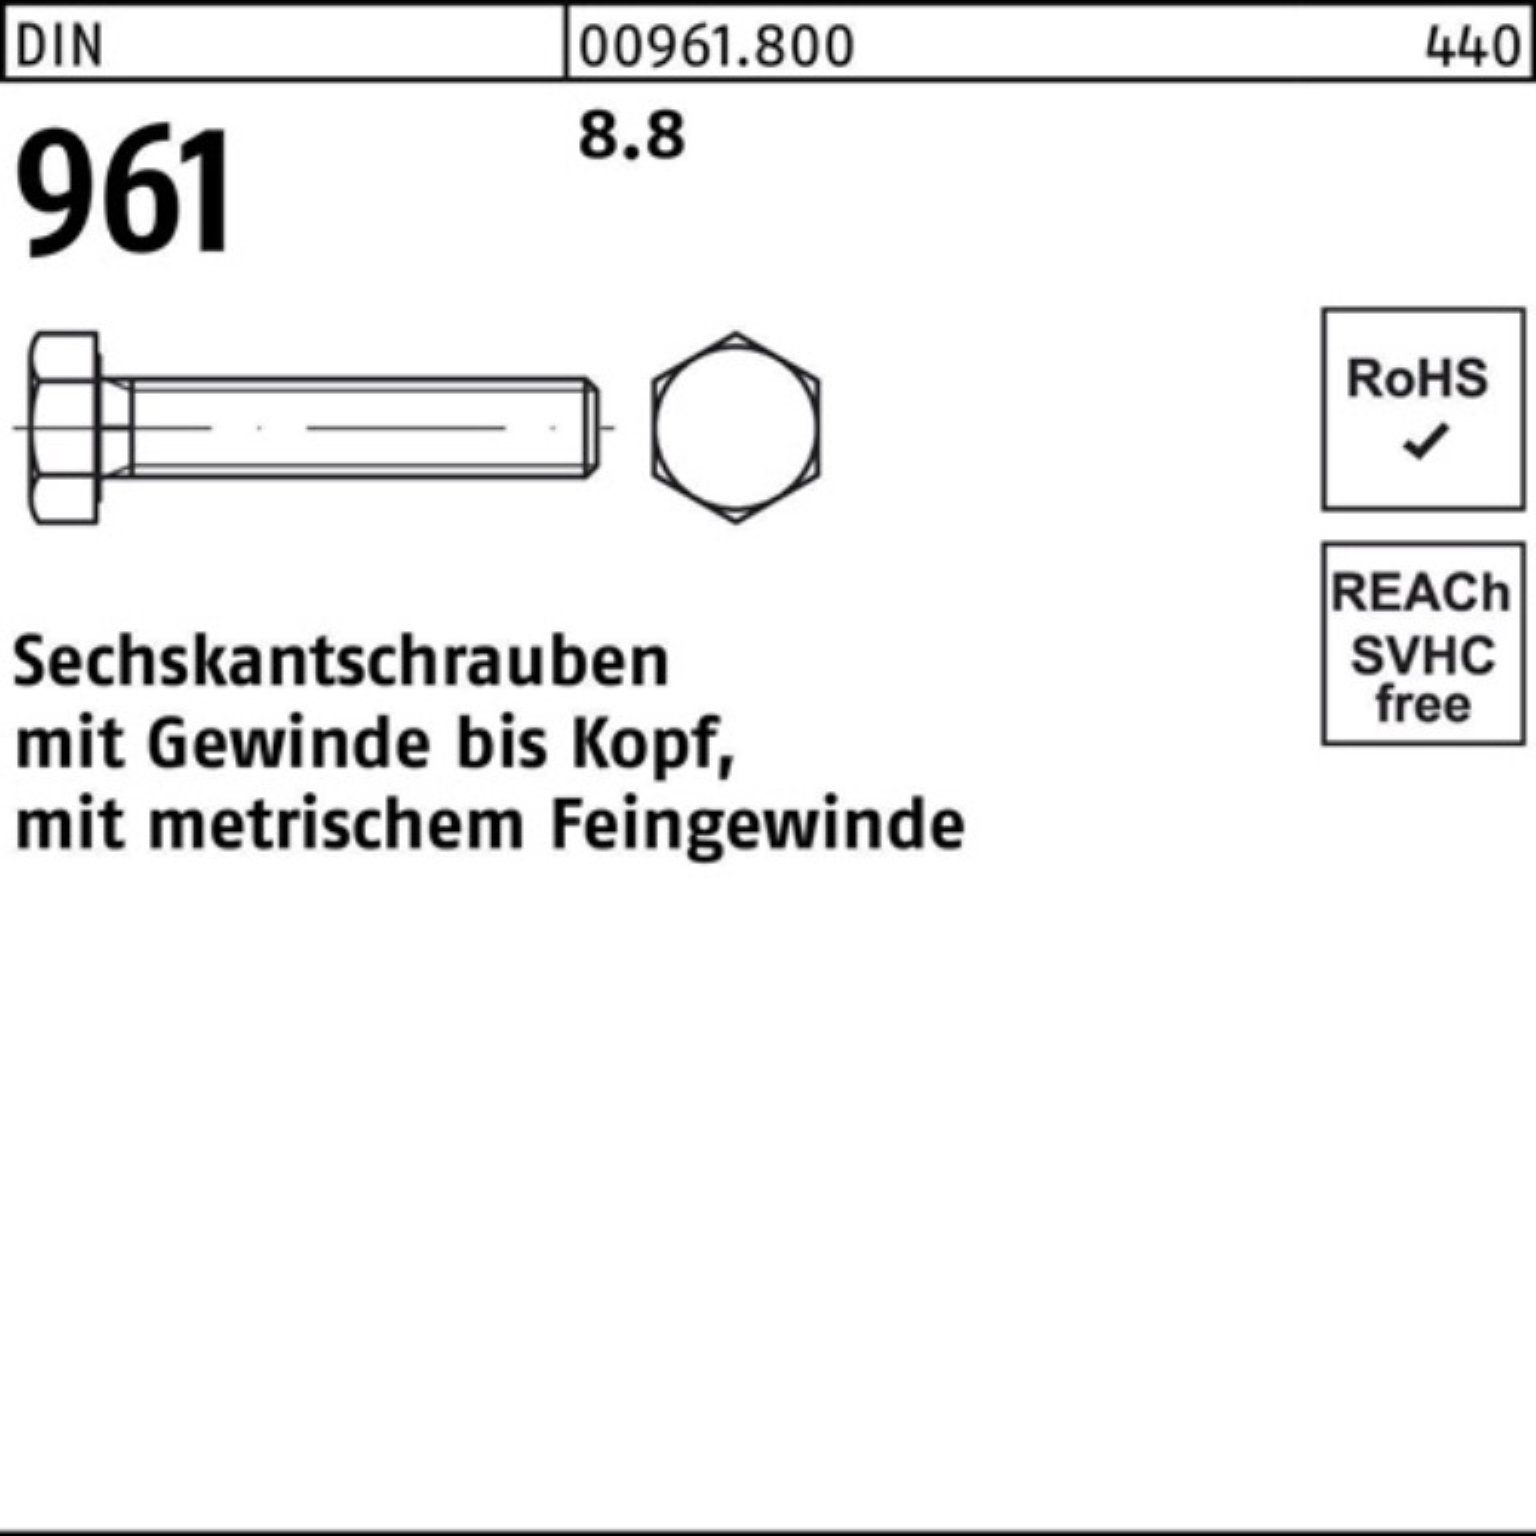 VG Reyher Sechskantschraube Stück 8.8 DIN Sechskantschraube Pack 961 100er DIN M18x1,5x 50 30